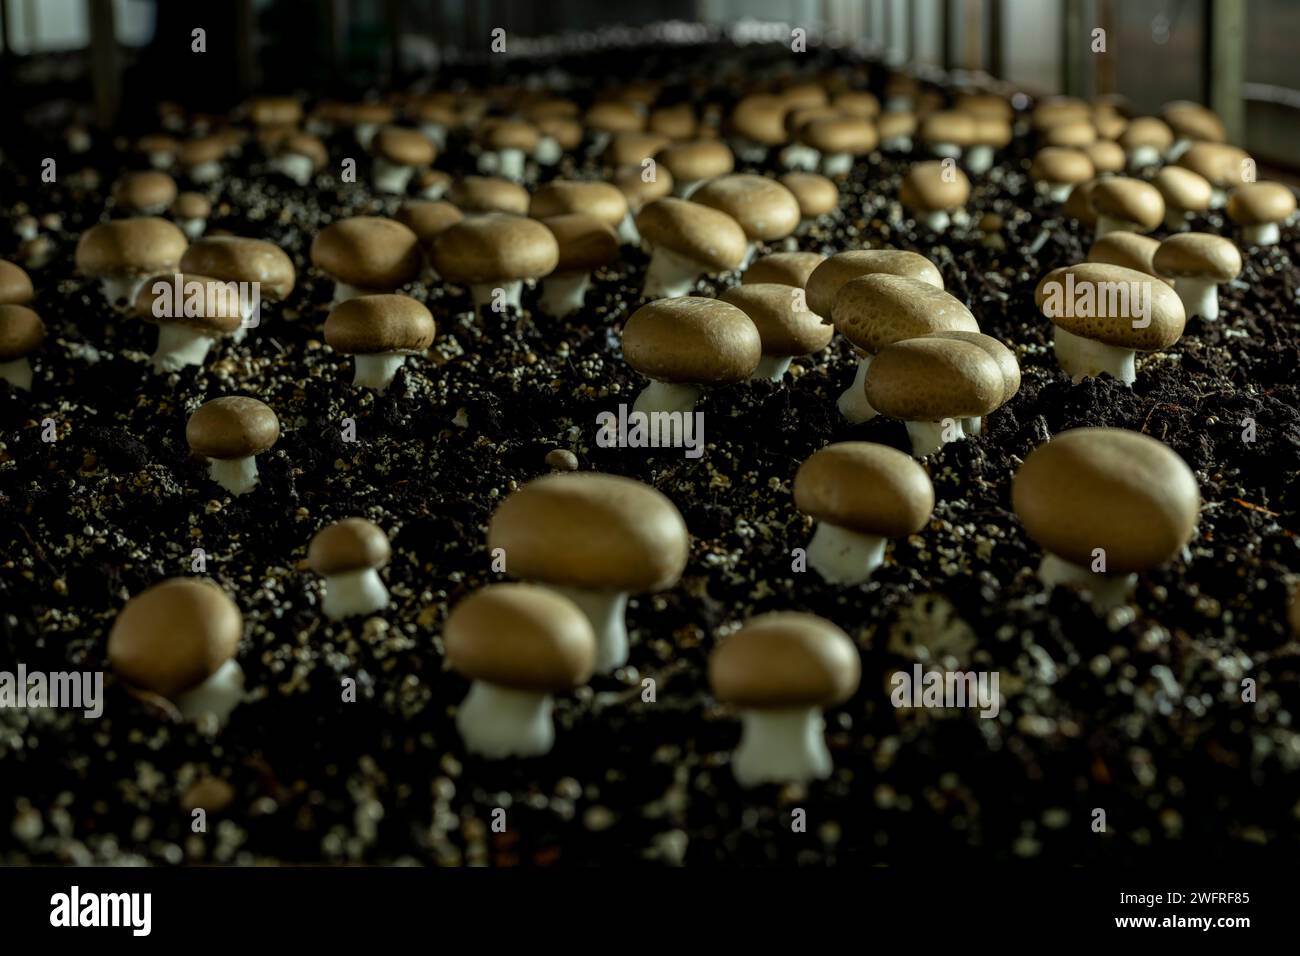 Portobello-Pilze (Agaricus brunnescens) sind eine köstliche Sorte von Kulturpilzen, sie stammen aus derselben Familie wie der weiße Pilz (Agari) Stockfoto